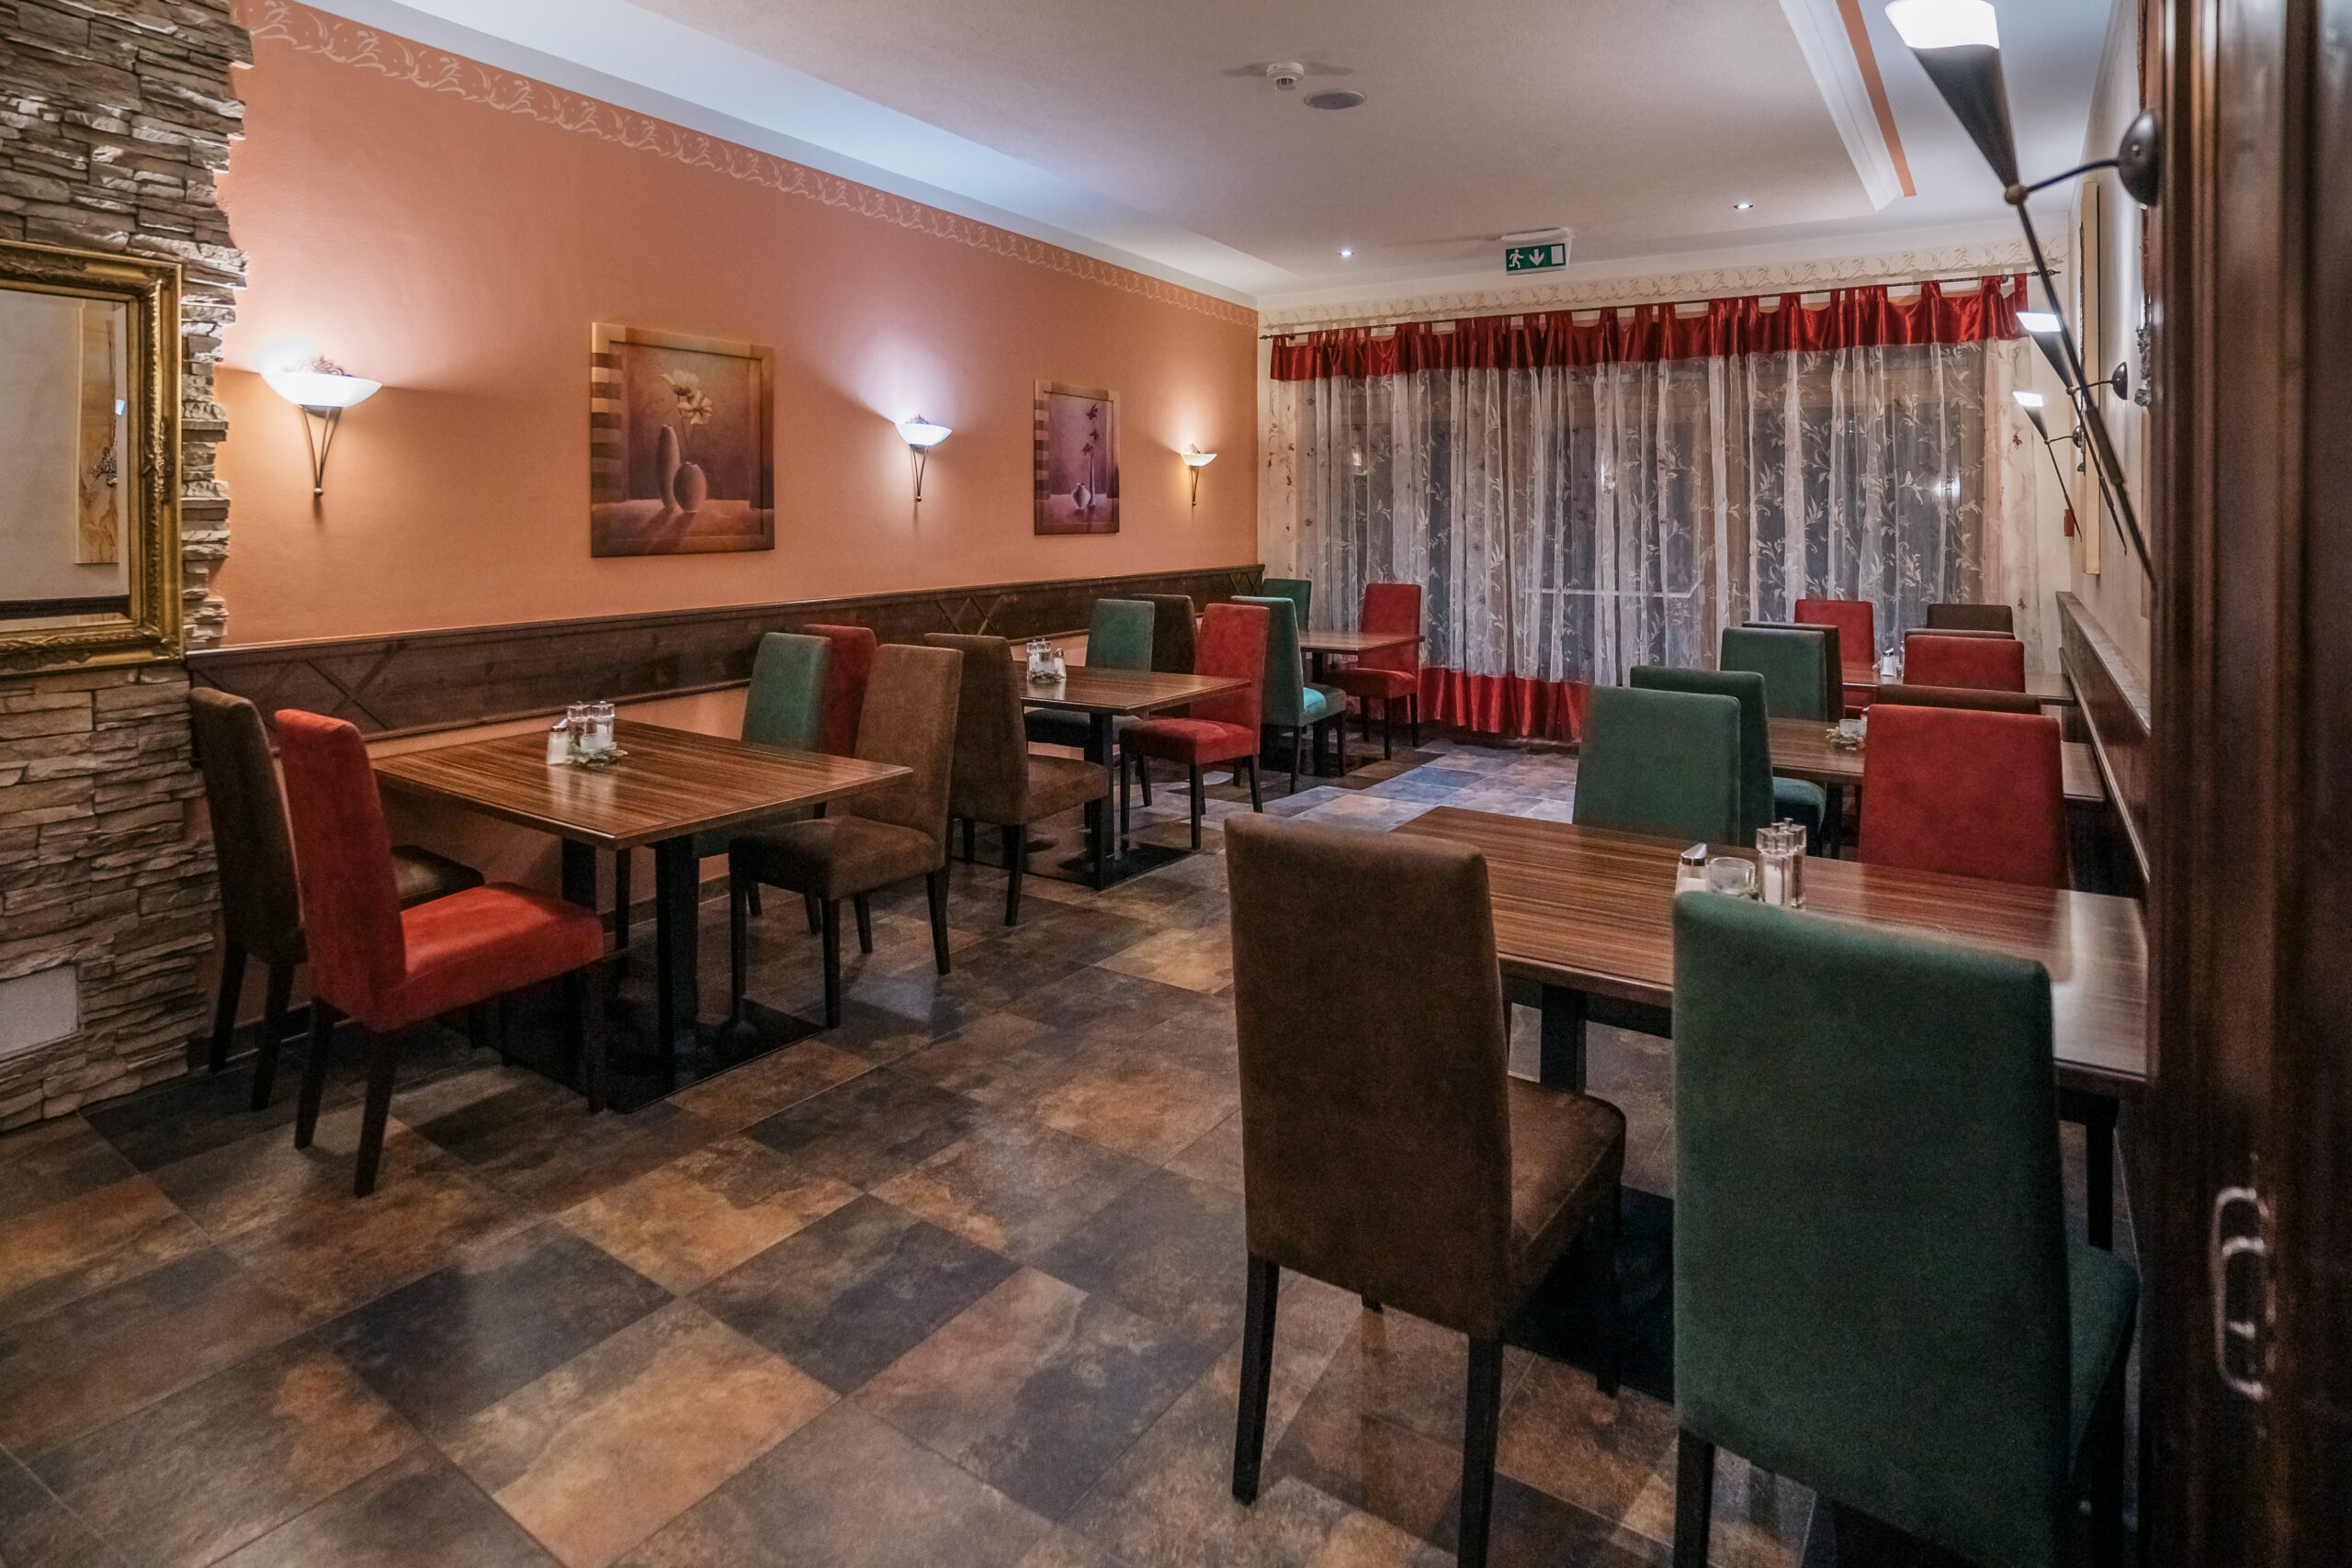 Das Hotel Austria Bistro mit modernen Holztischen und Stühlen in warmen Rottönen und einer entspannten, einladenden Atmosphäre